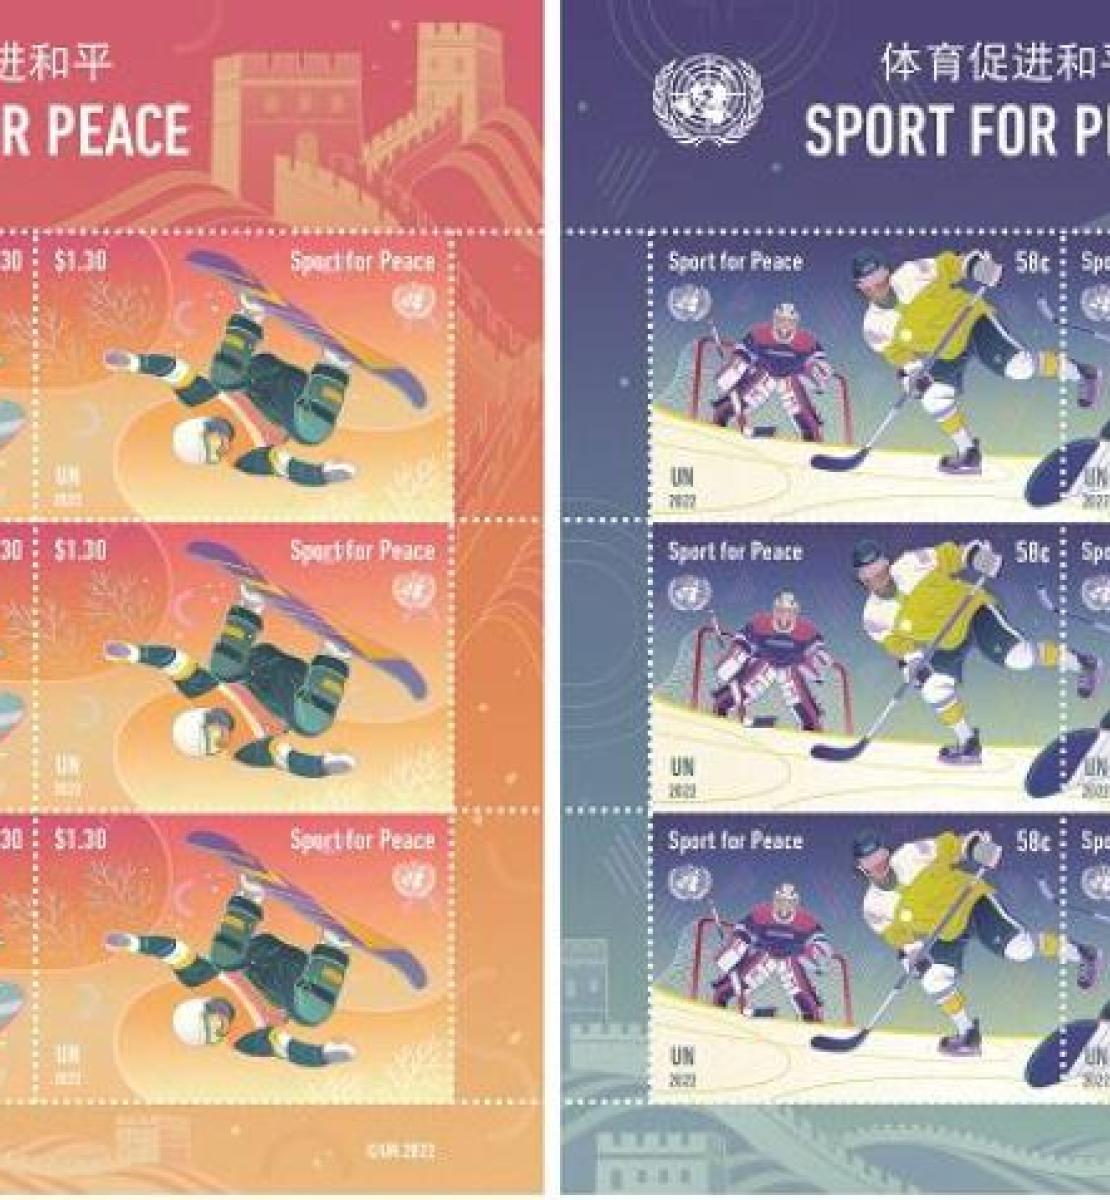 Las estampillas de deportes de invierno "deportes para la paz".